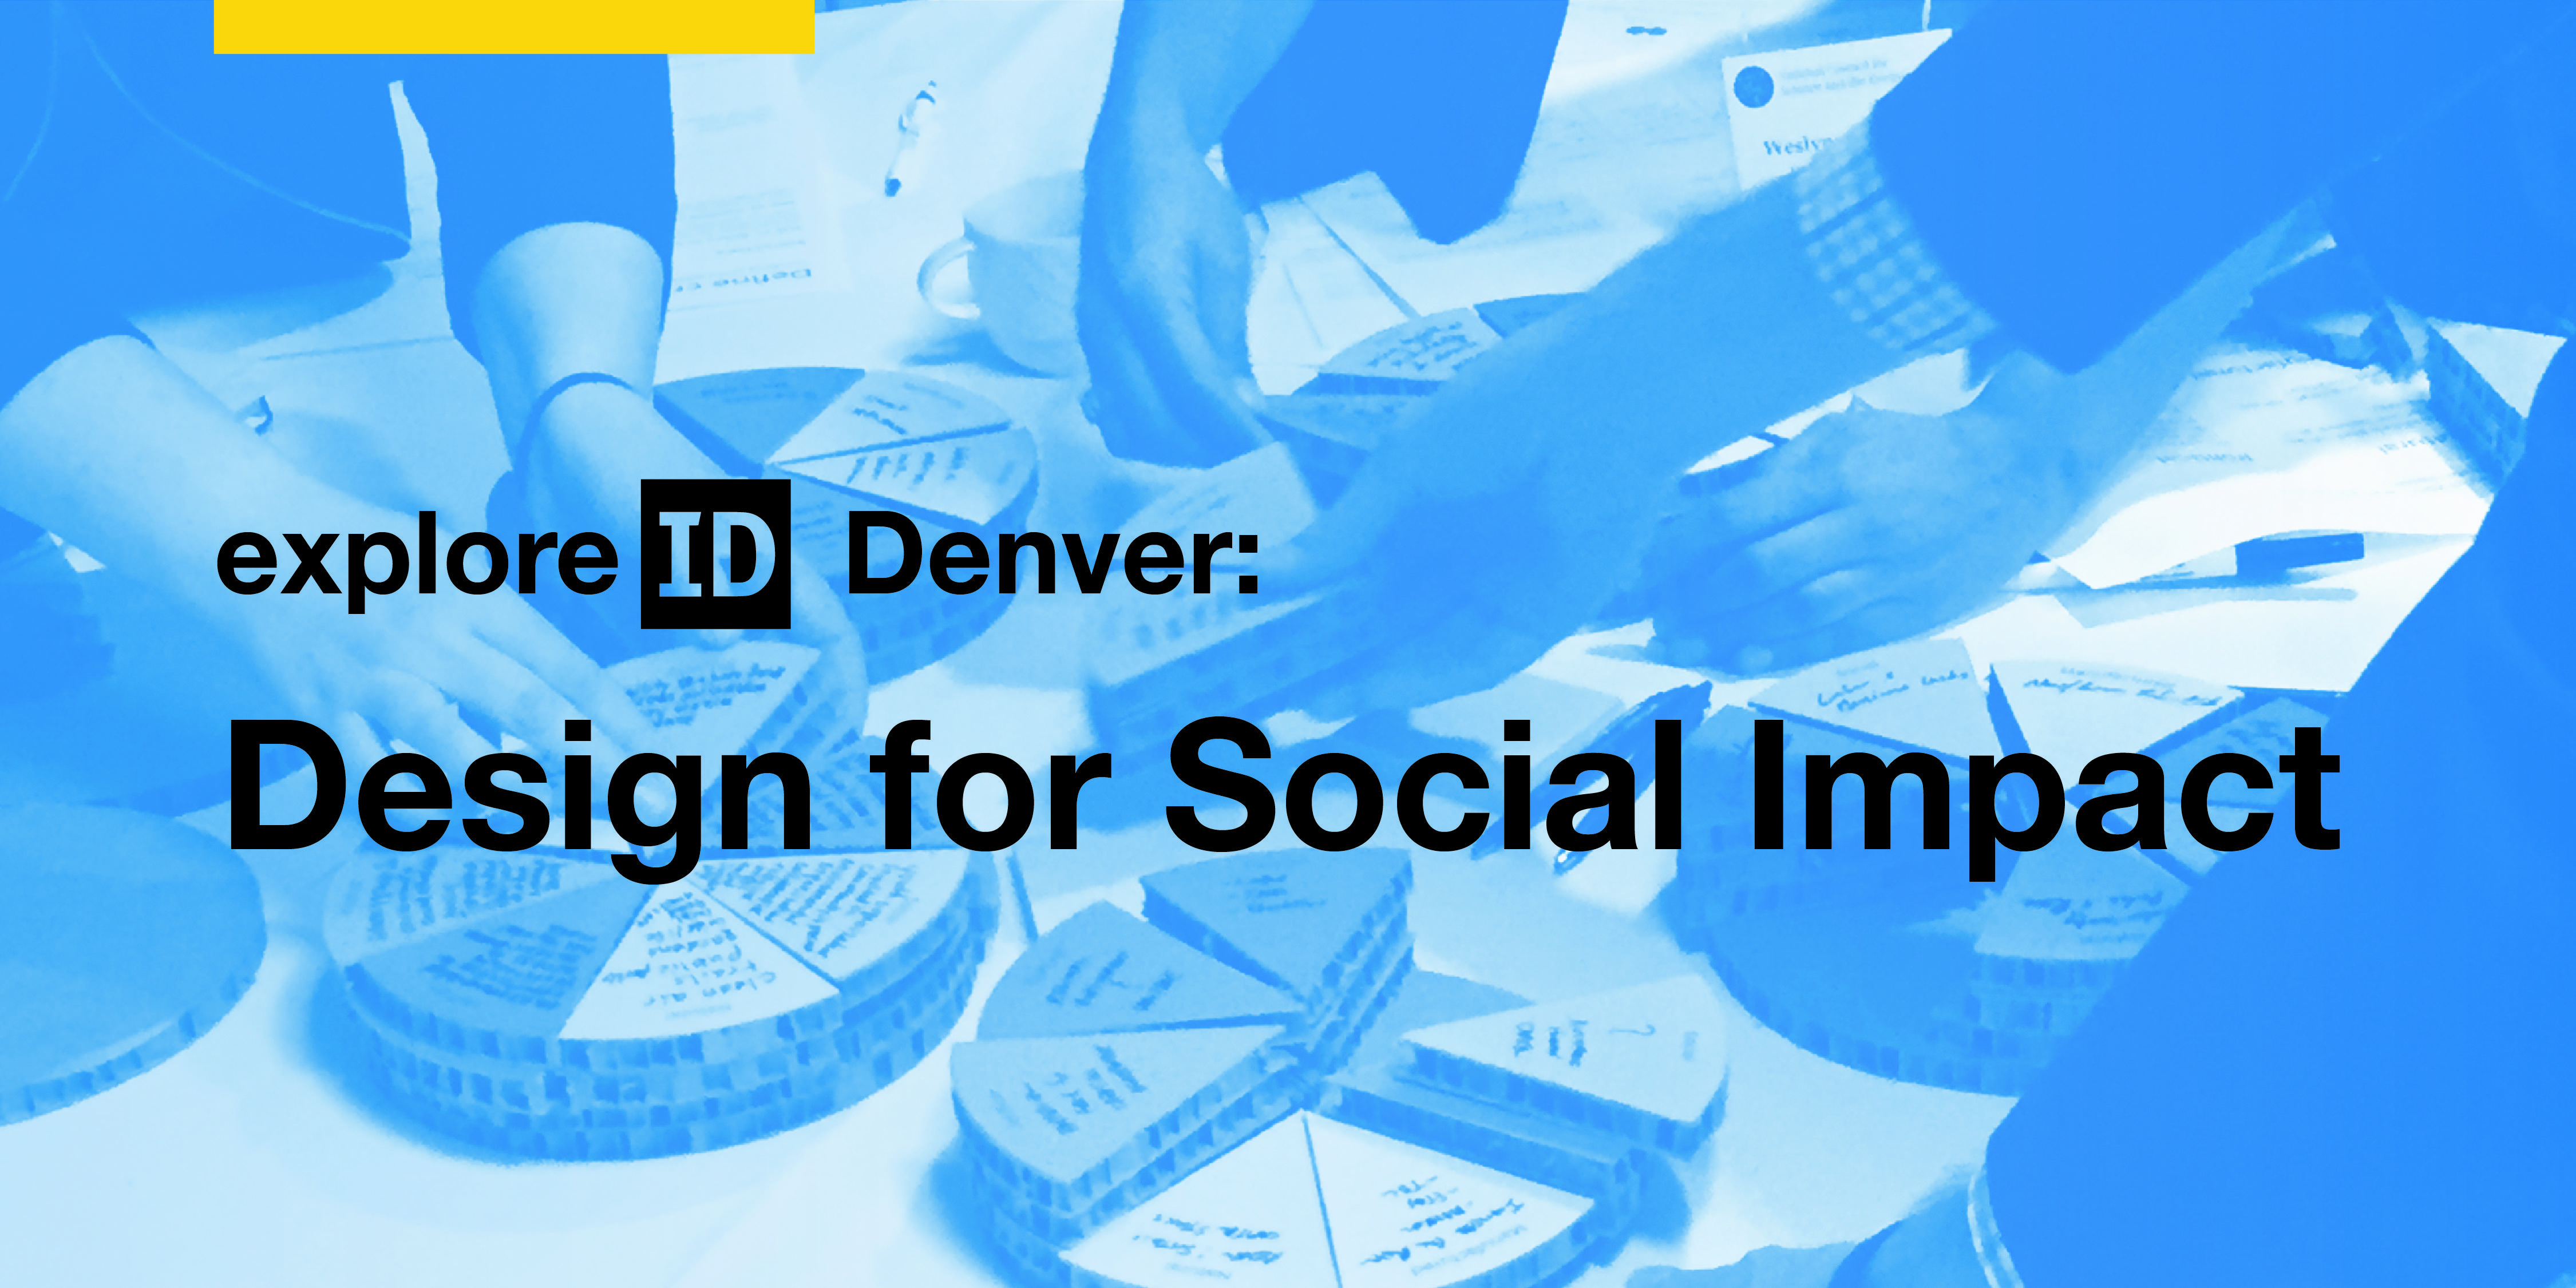 exploreID Denver: Design for Social Impact